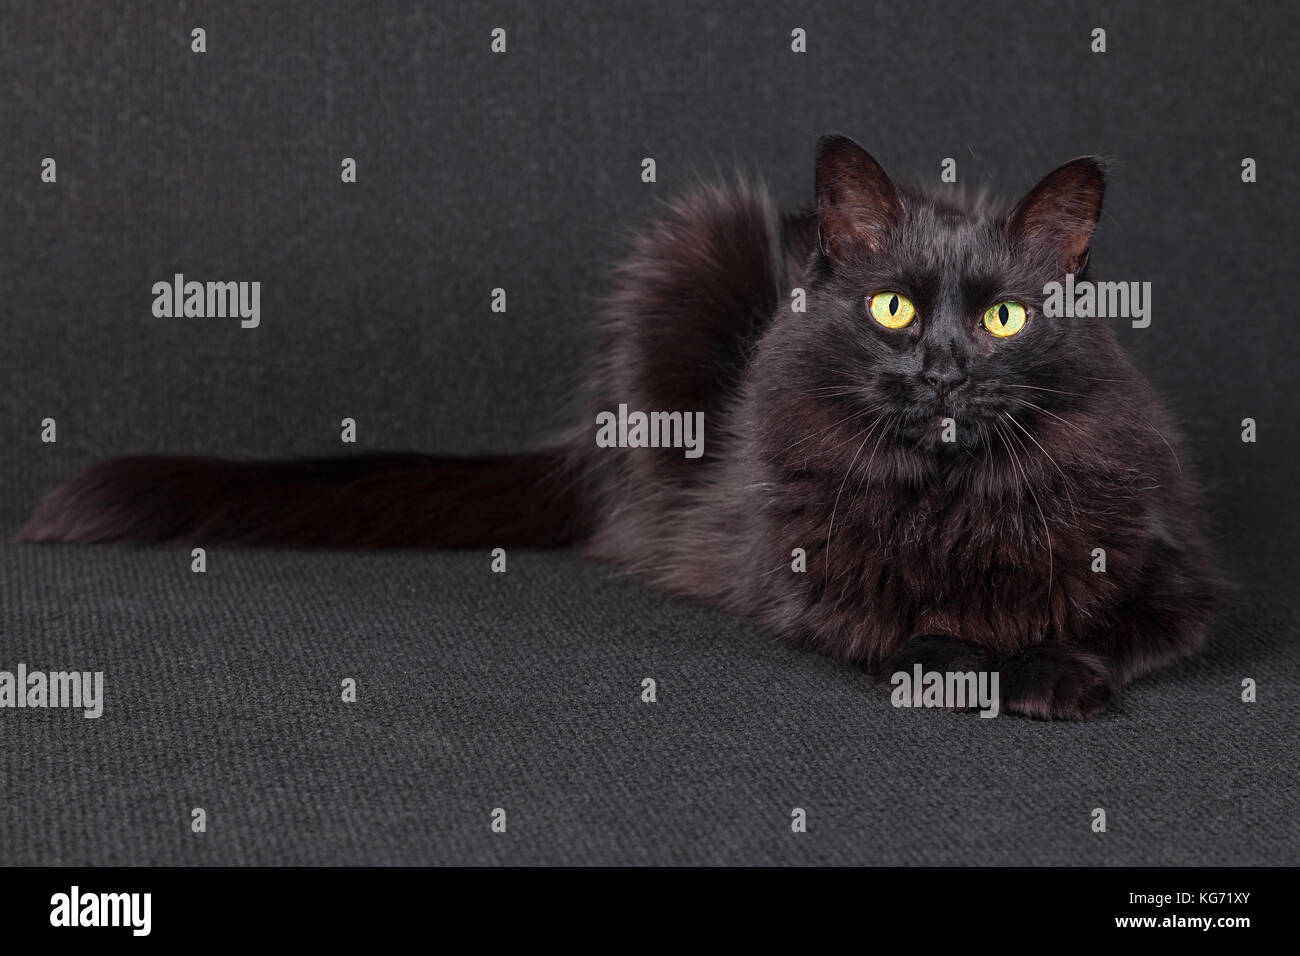 Sleepy chat noir couché face caméra sur un fond sombre. cheveux longs. race Angora turc femelle adulte. Banque D'Images